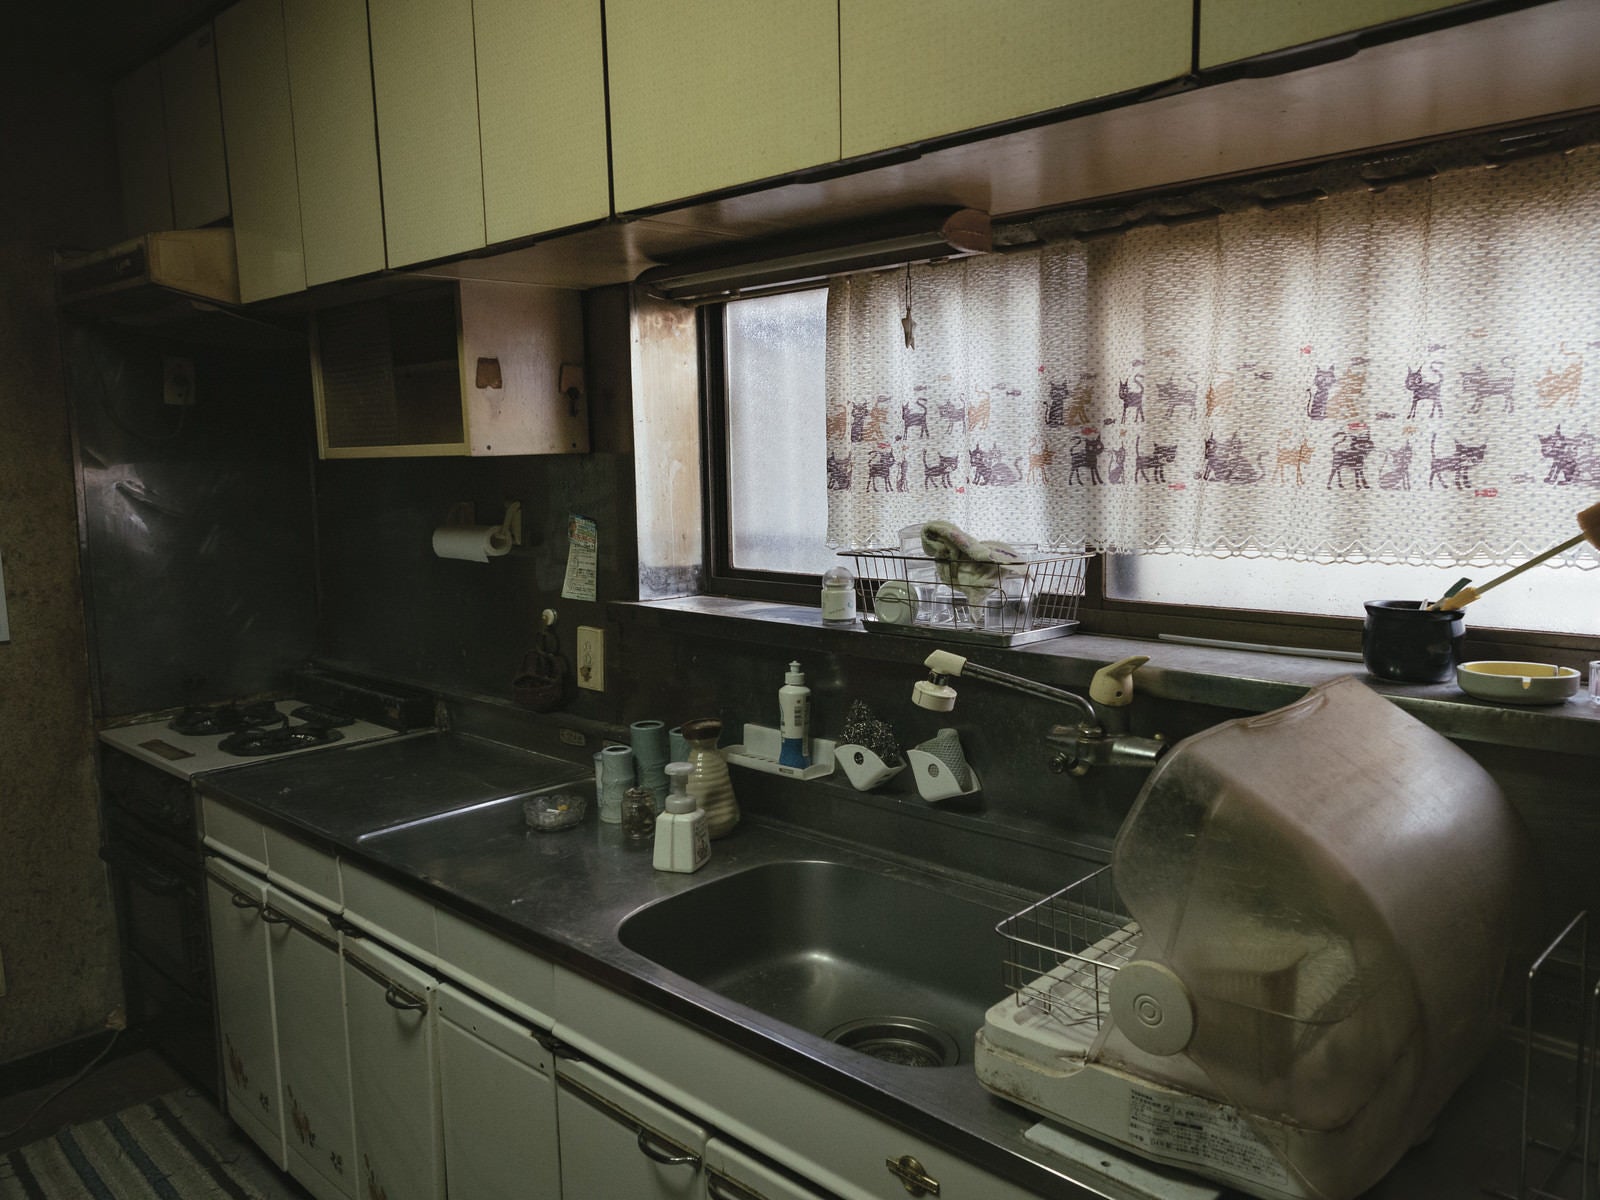 「昭和感漂うキッチンの様子」の写真